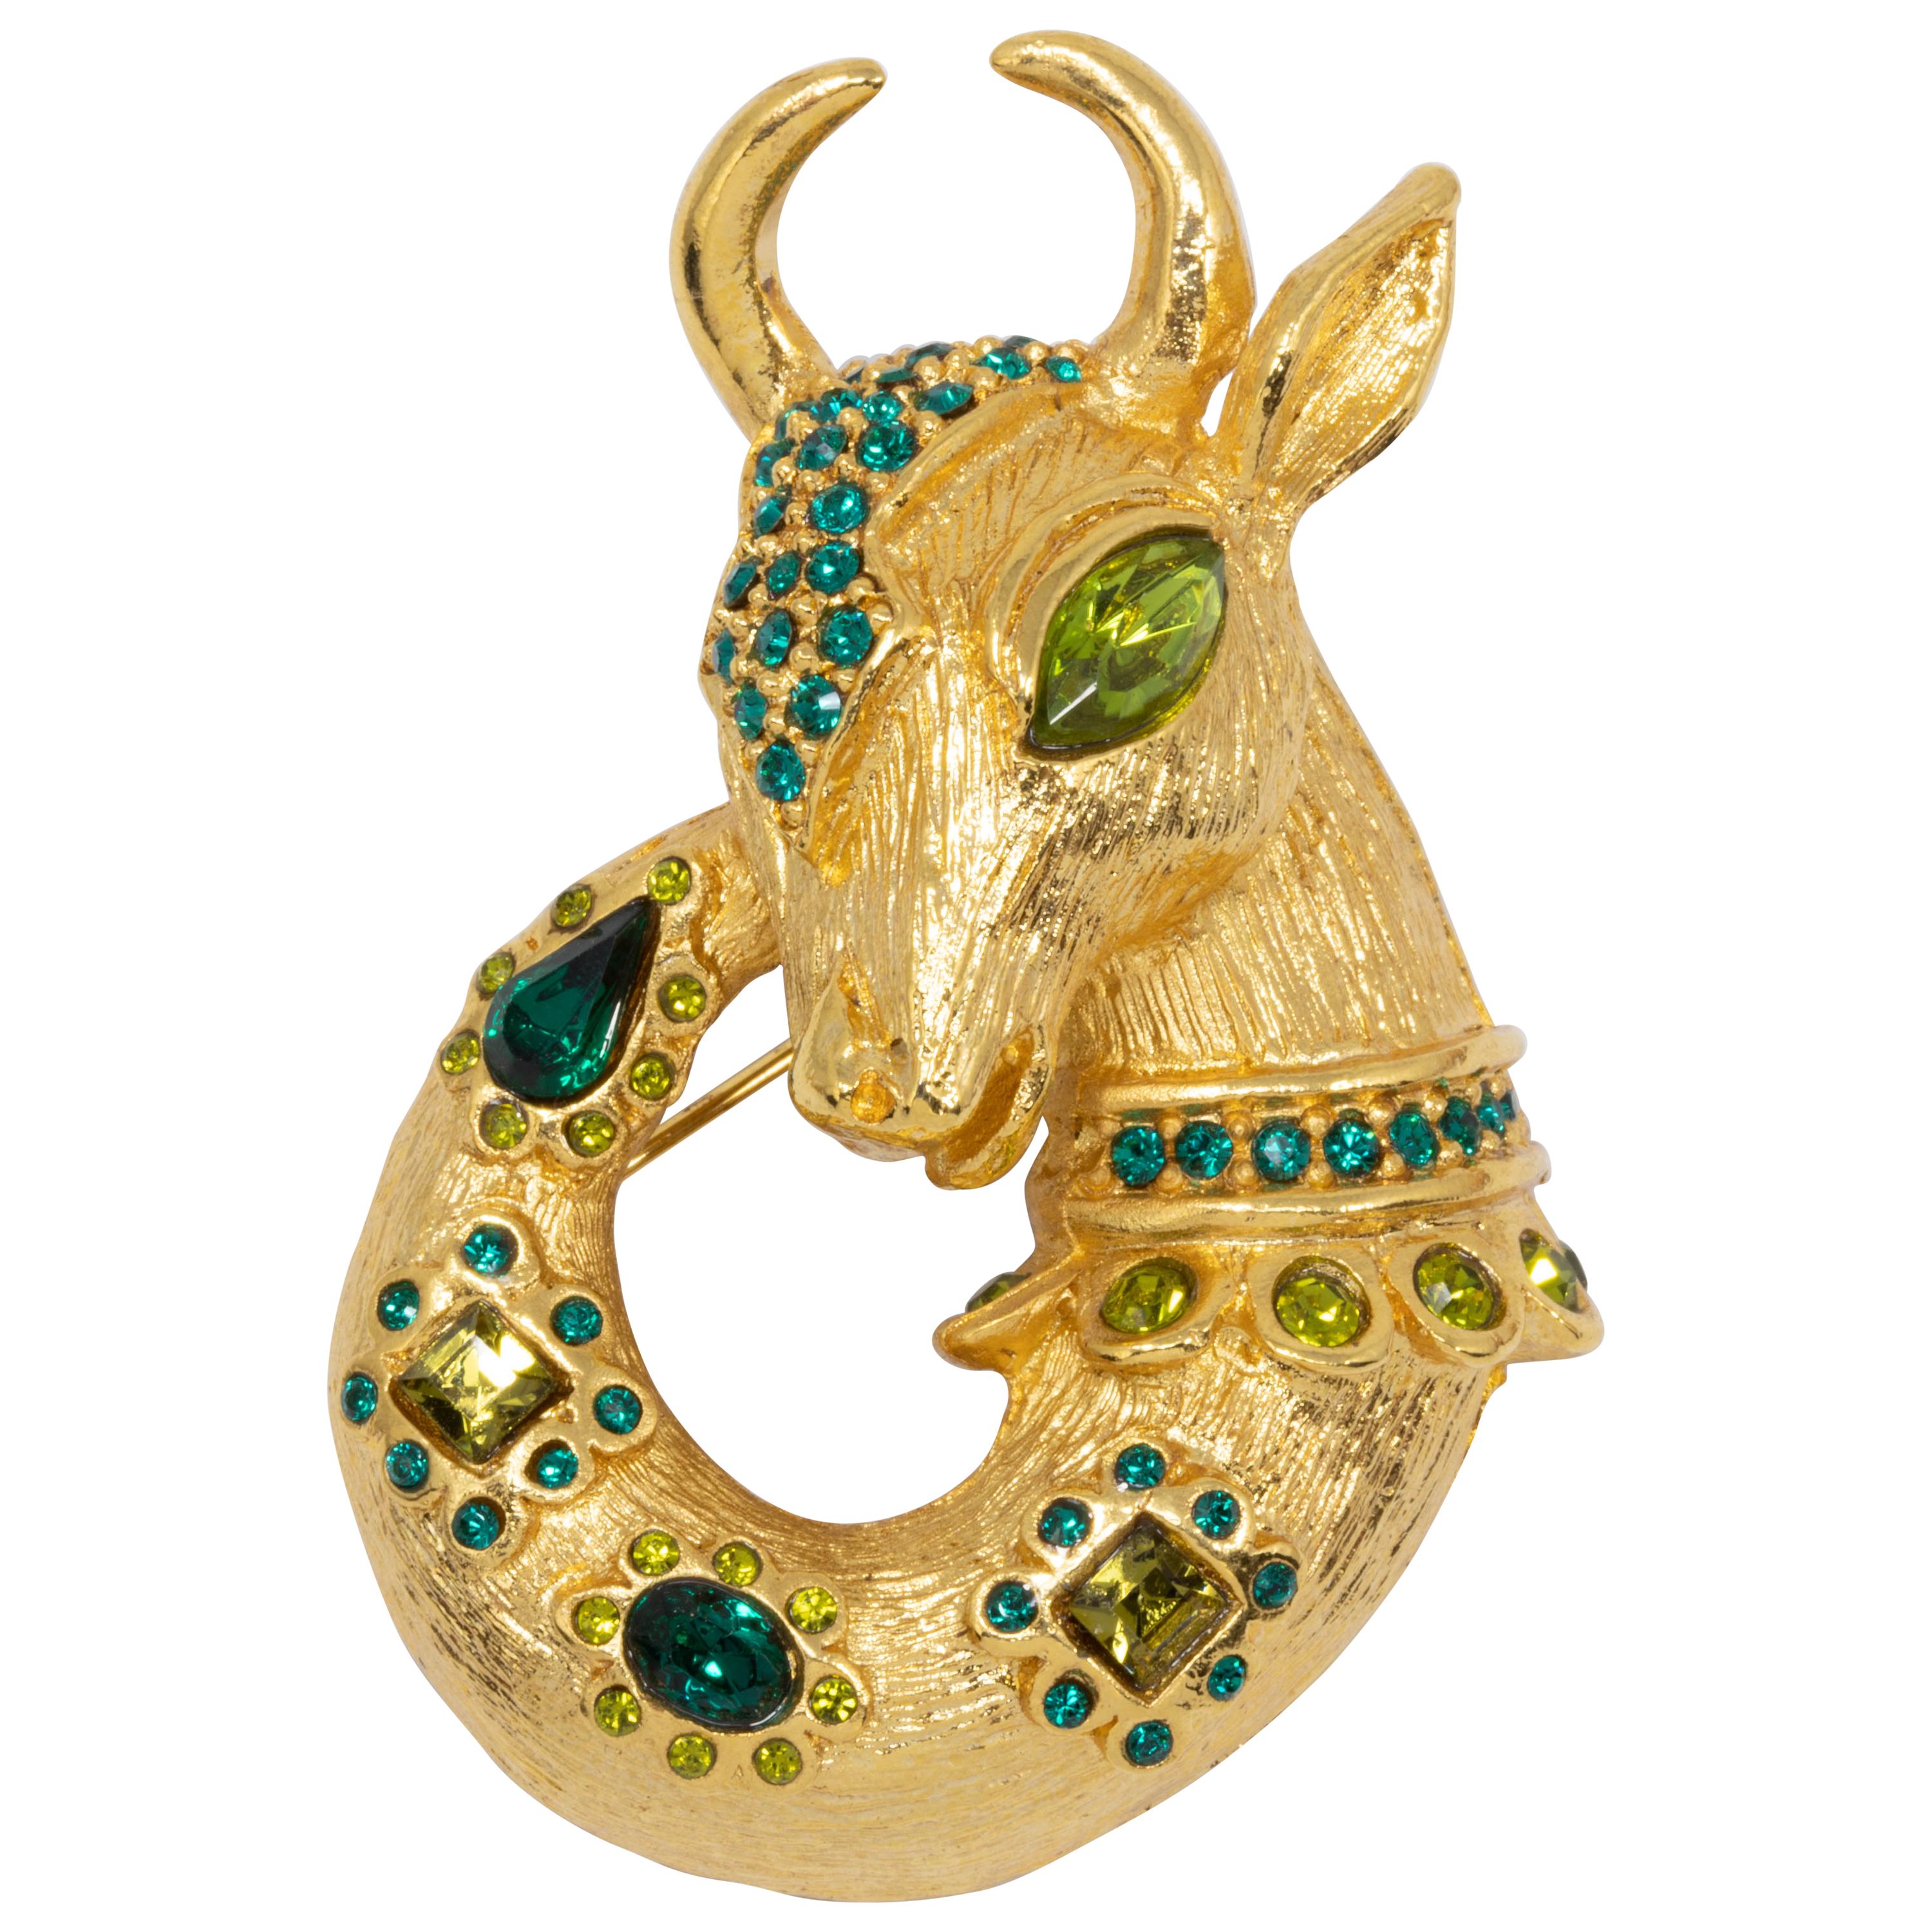 Oscar de la Renta Lane Mythological Fantasy Goat Pin, Brooch, Pendant in Gold